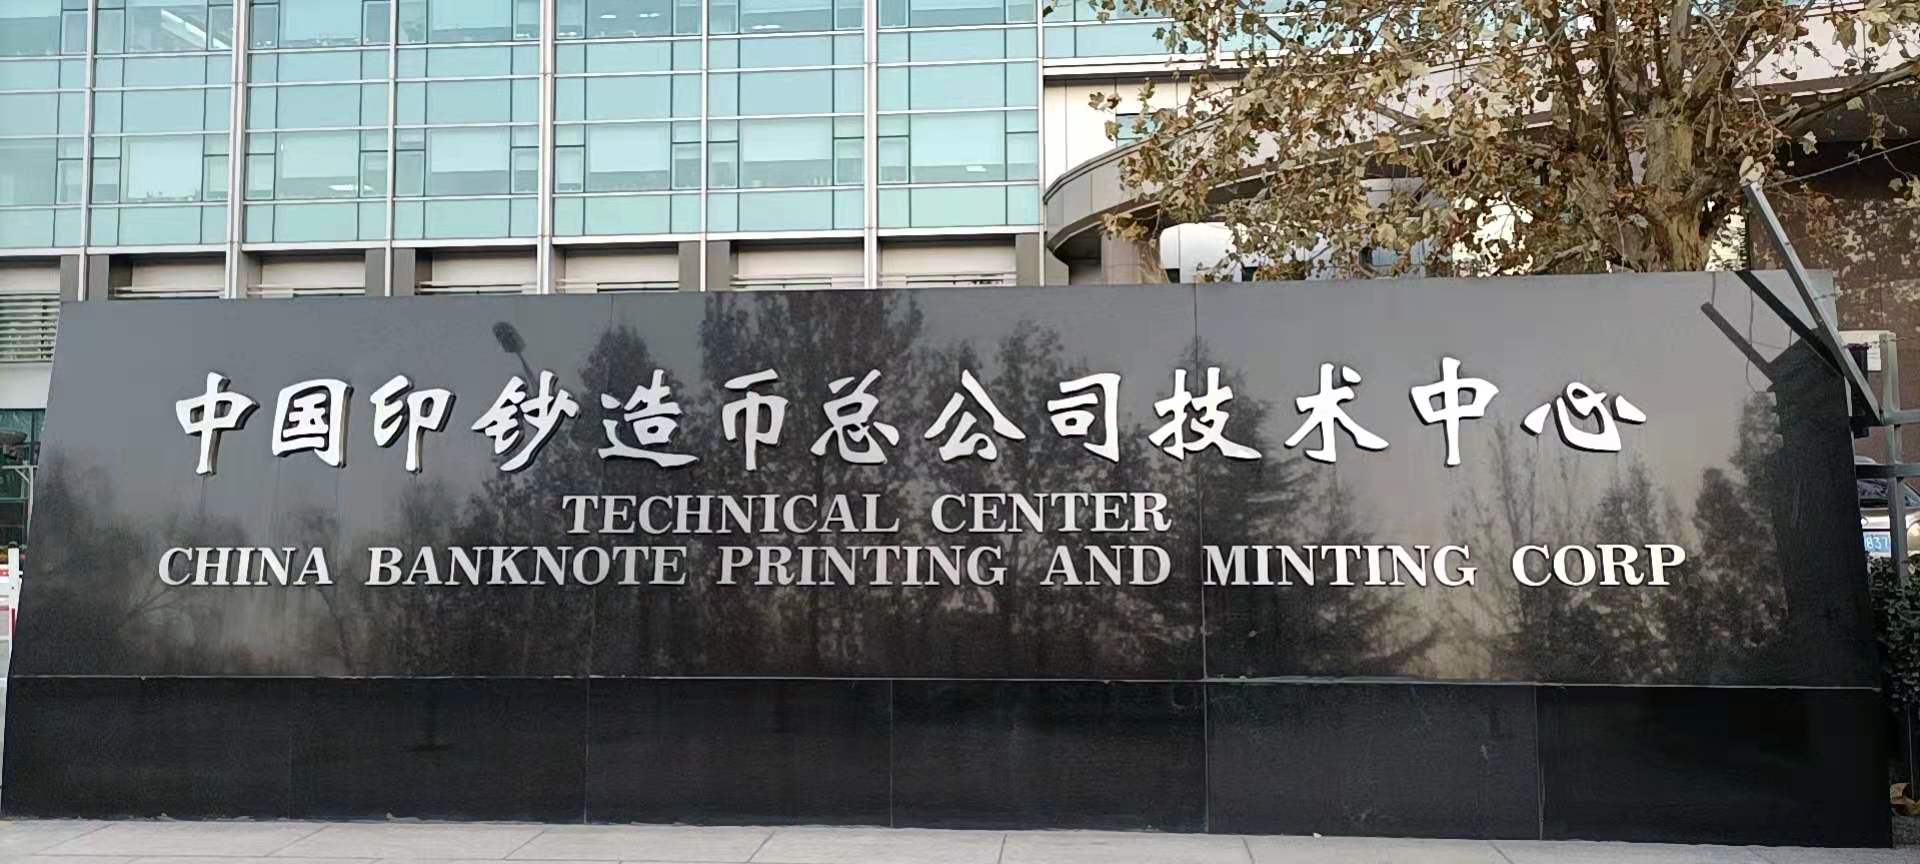 中国印钞造币总公司技术中心